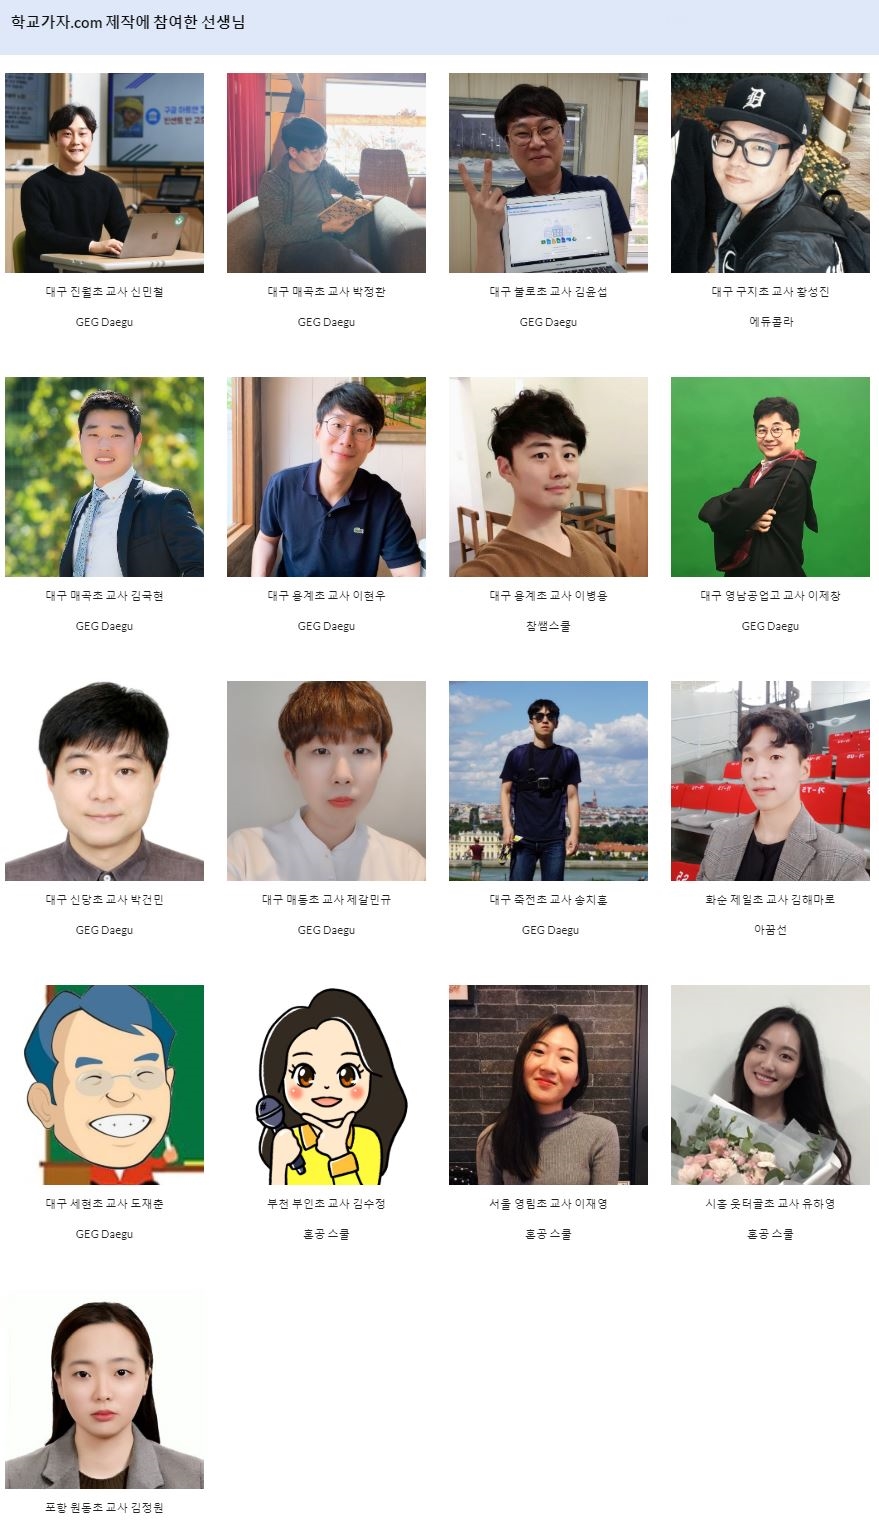 ‘학교가자.com’ 사이트 제작에 참여한 교사들. 